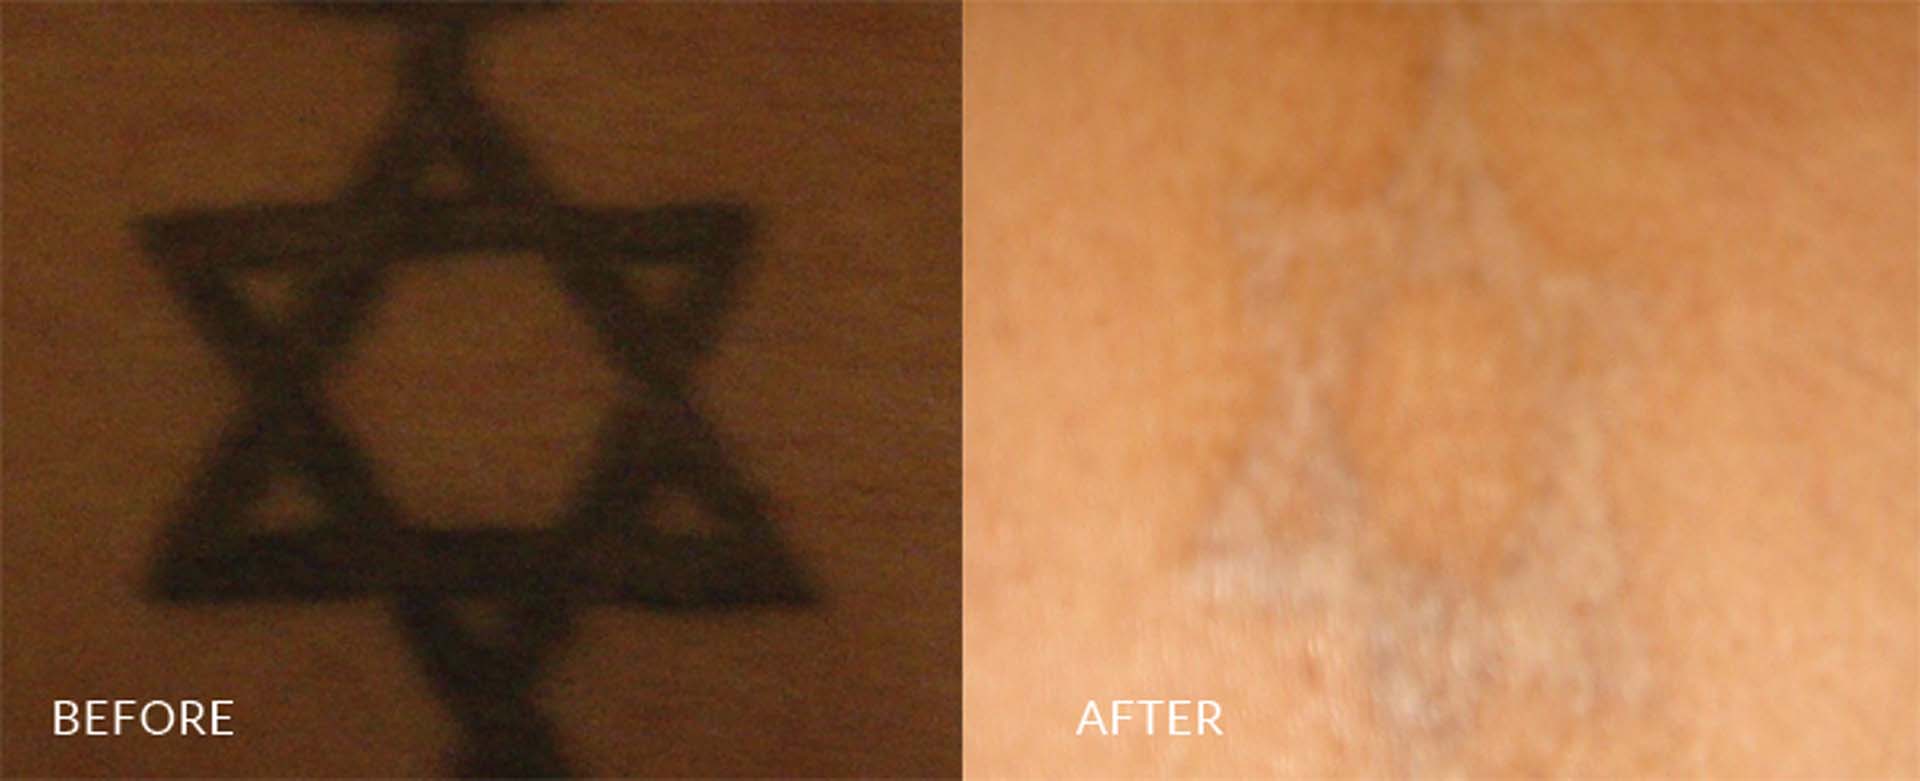 tattoo removal in sri lanka